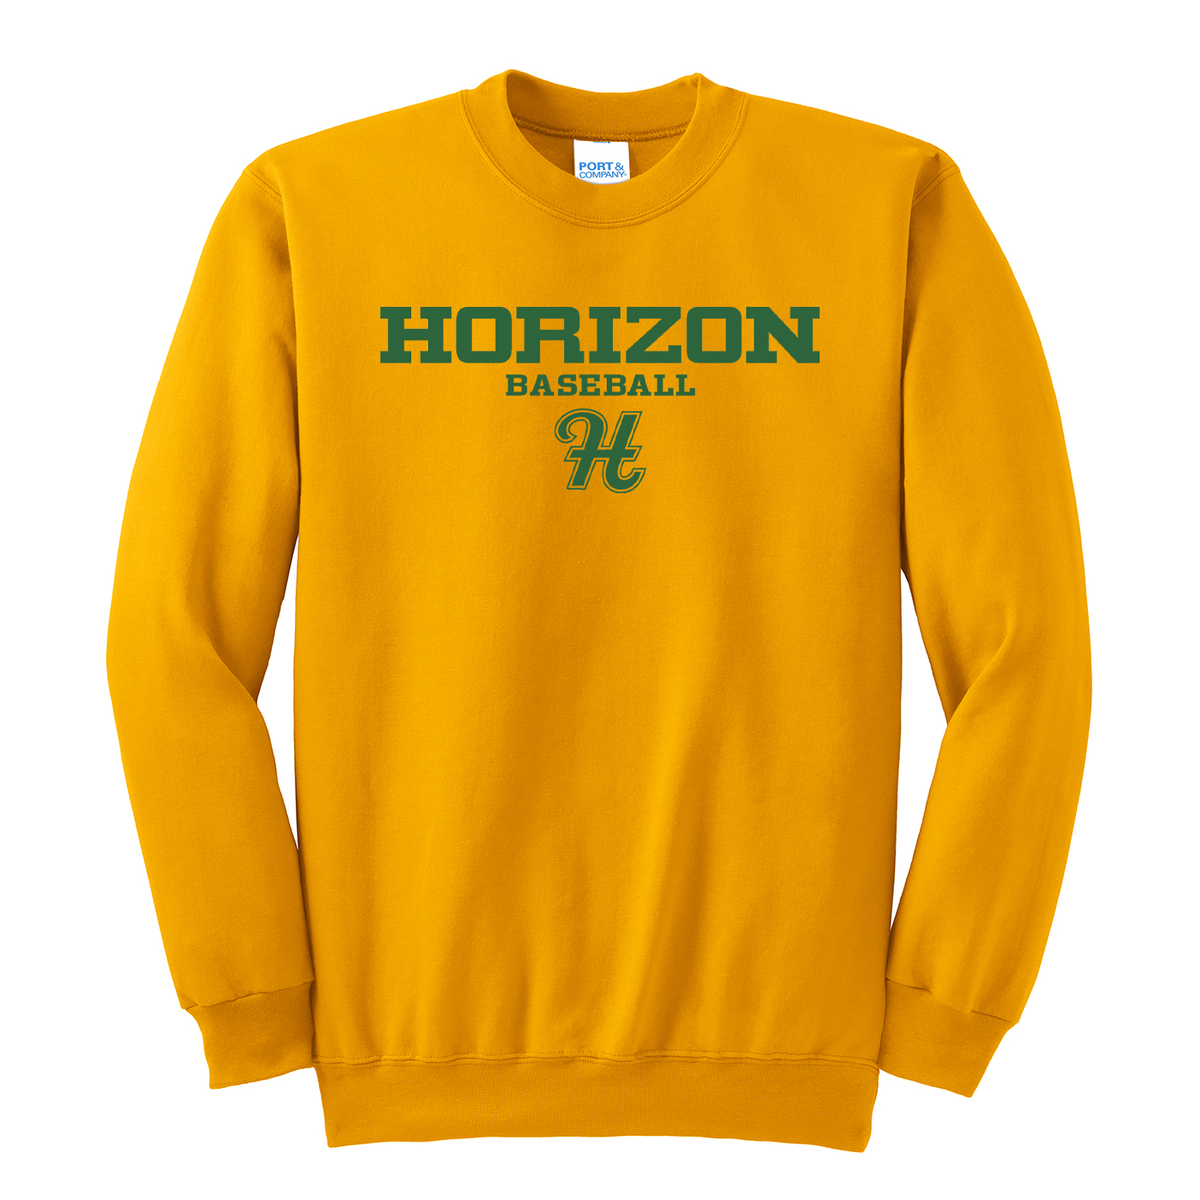 Horizon Baseball Crew Neck Sweater